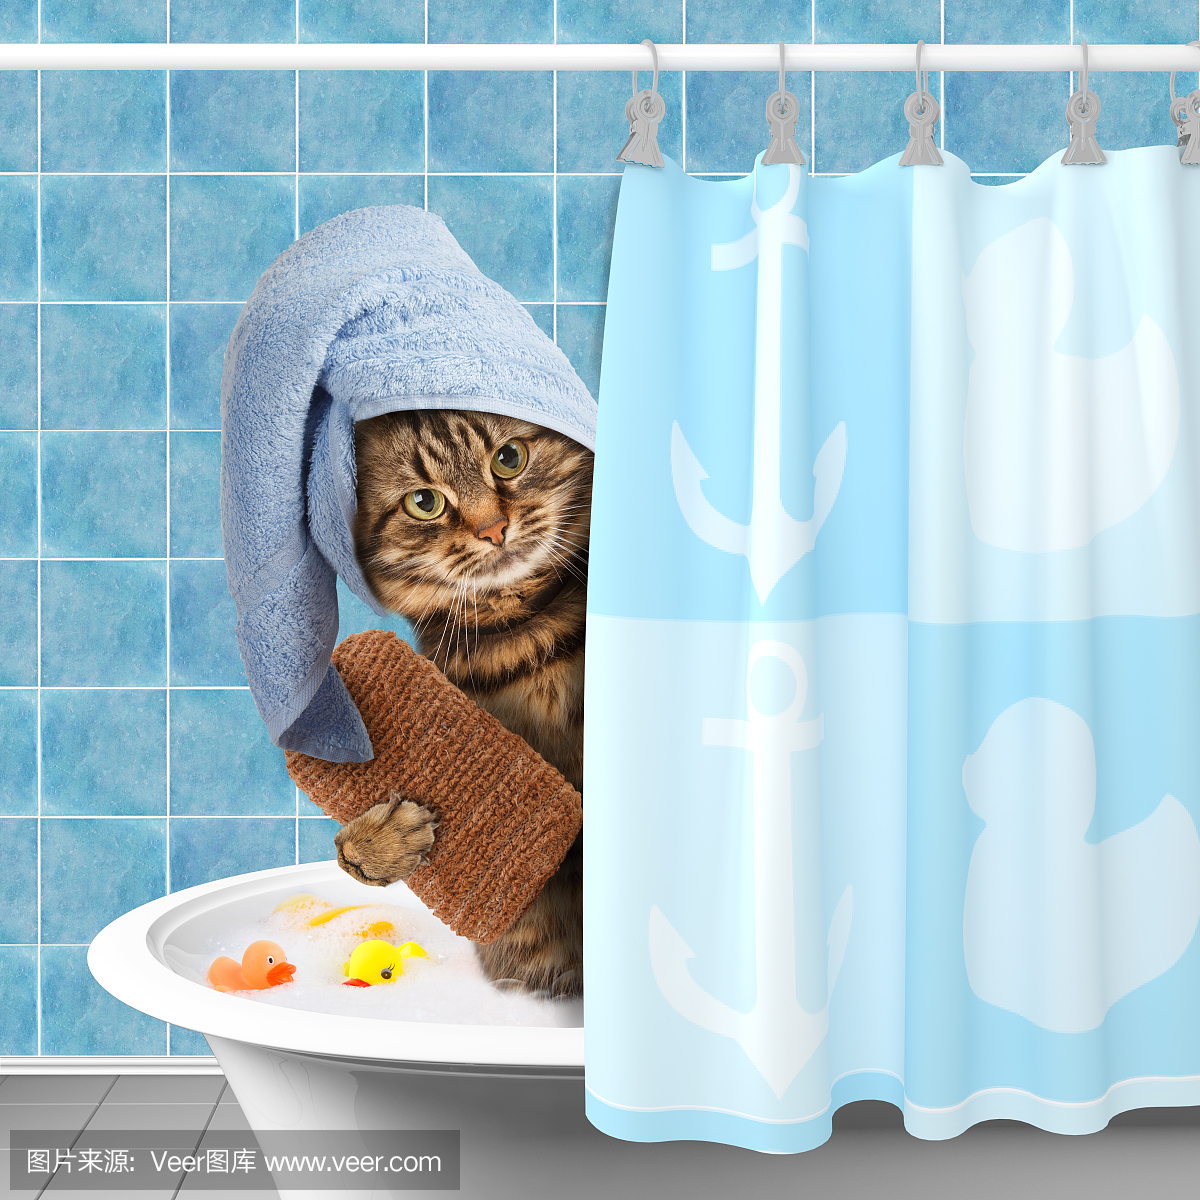 有趣的猫洗澡。